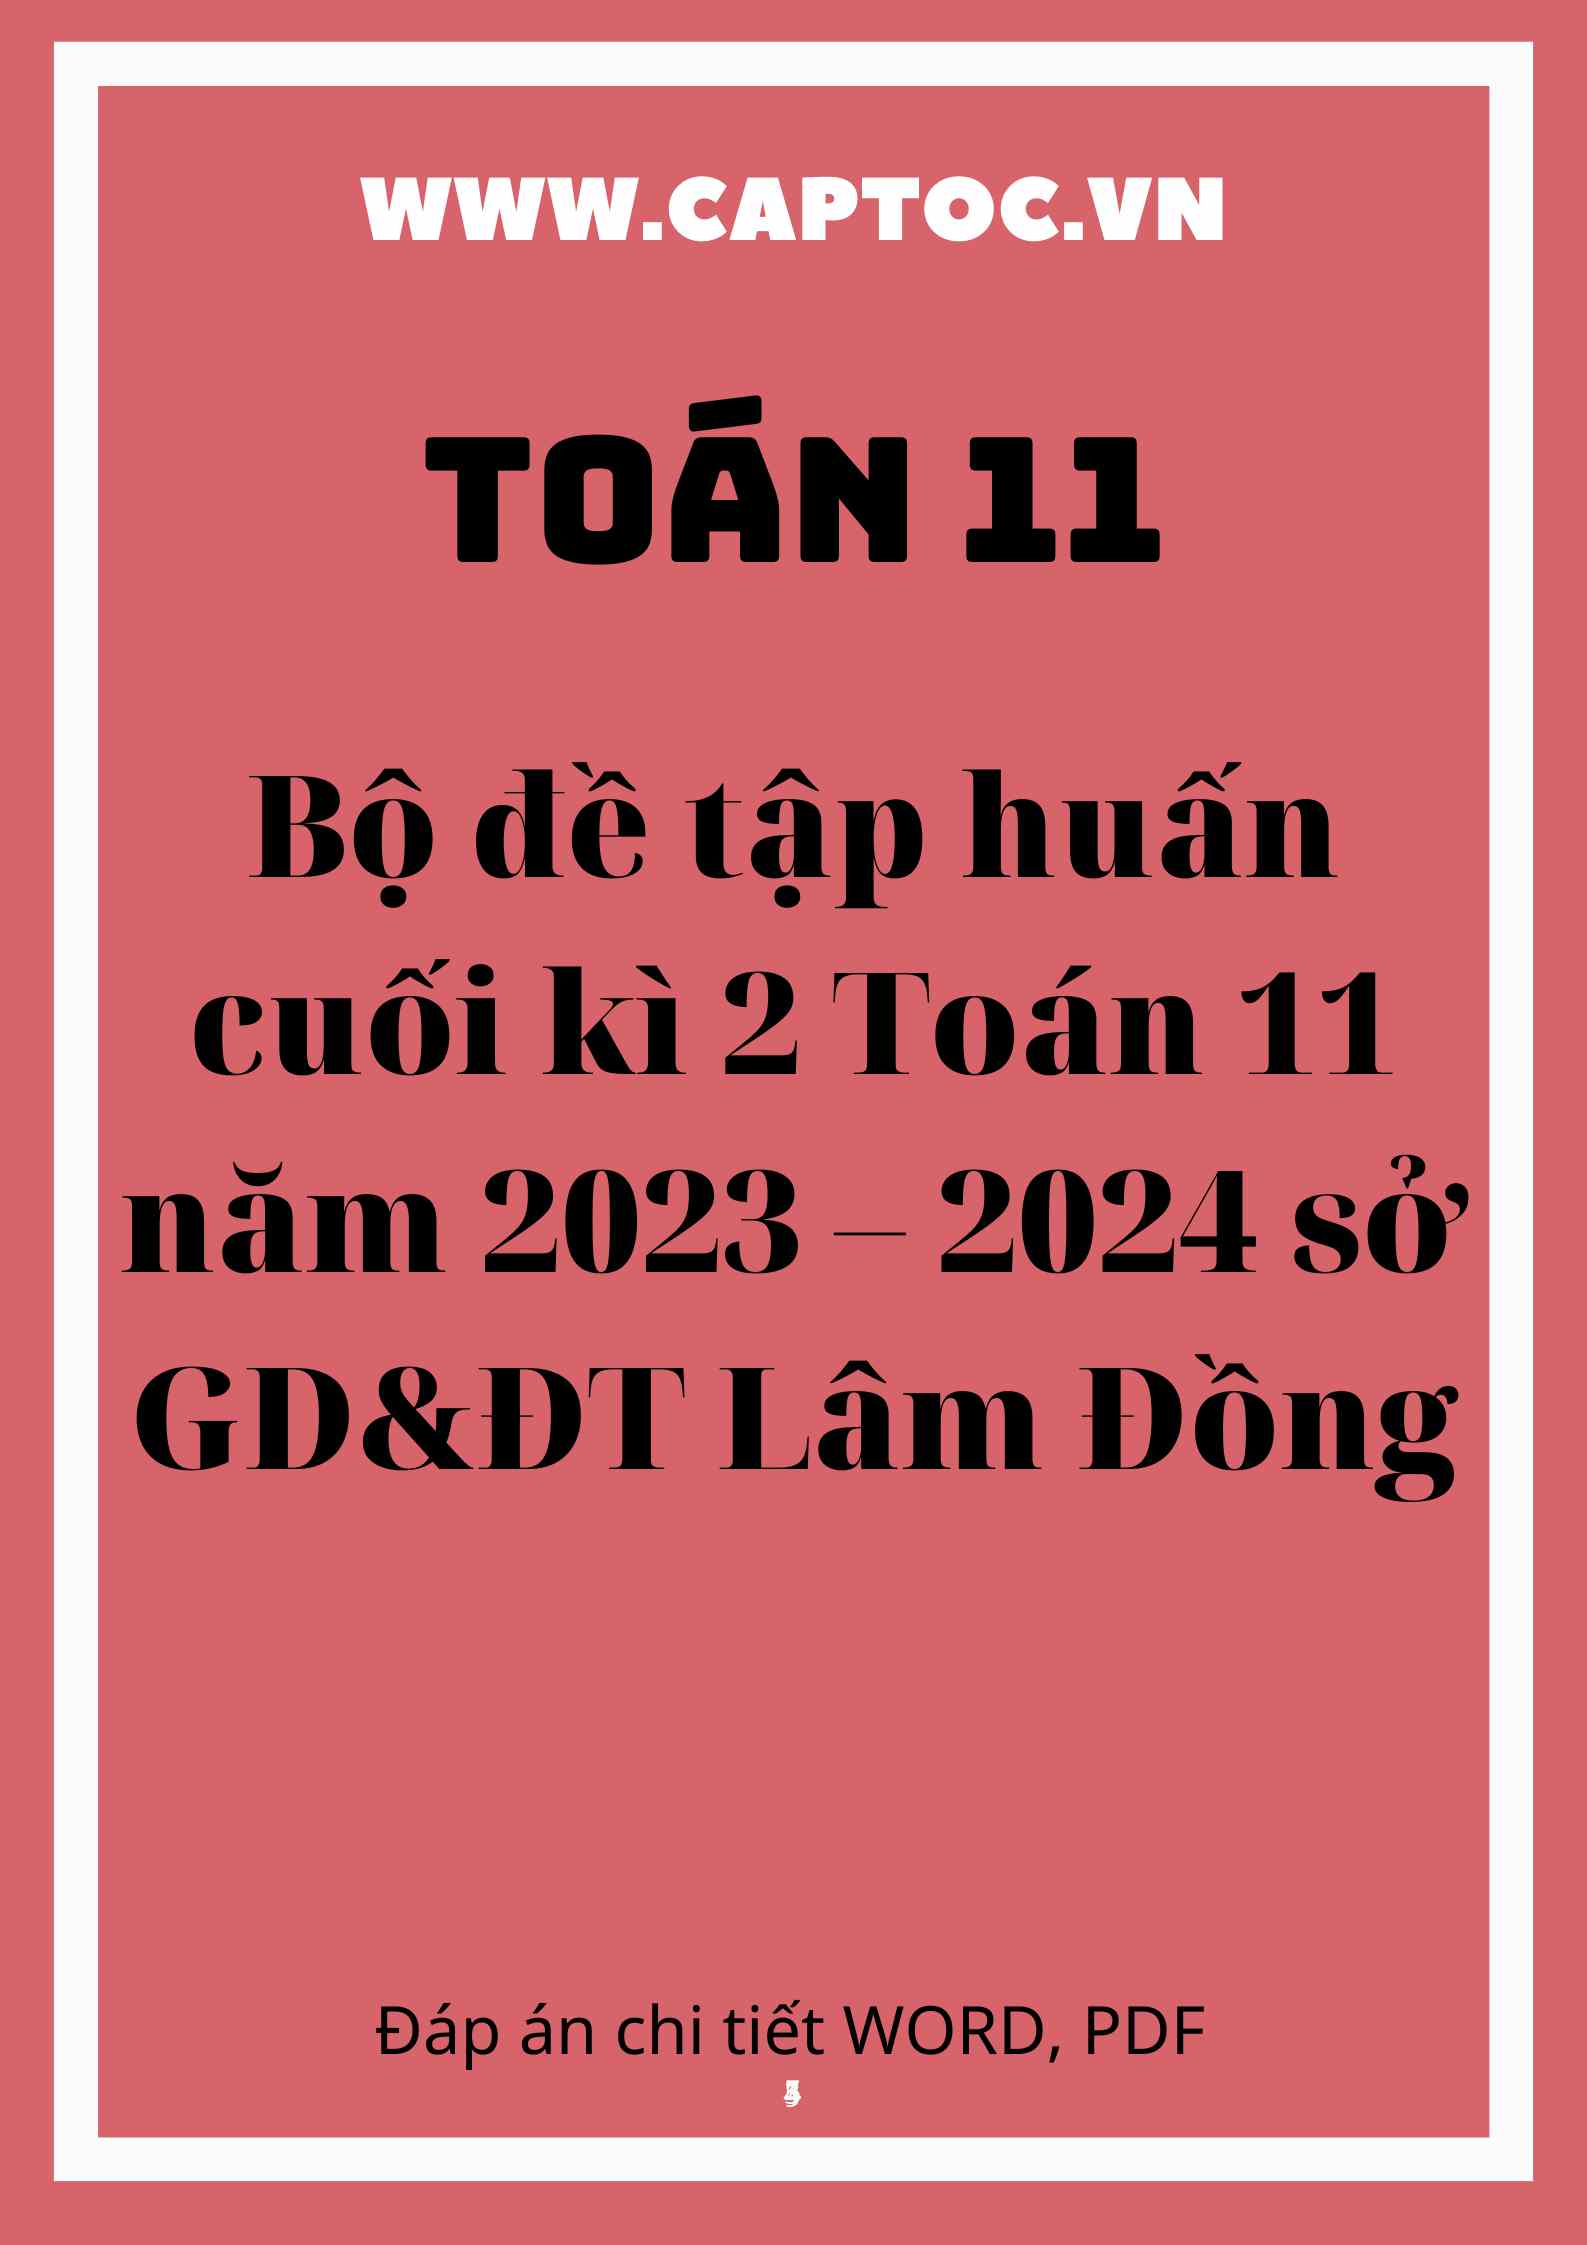 Bộ đề tập huấn cuối kì 2 Toán 11 năm 2023 – 2024 sở GD&ĐT Lâm Đồng